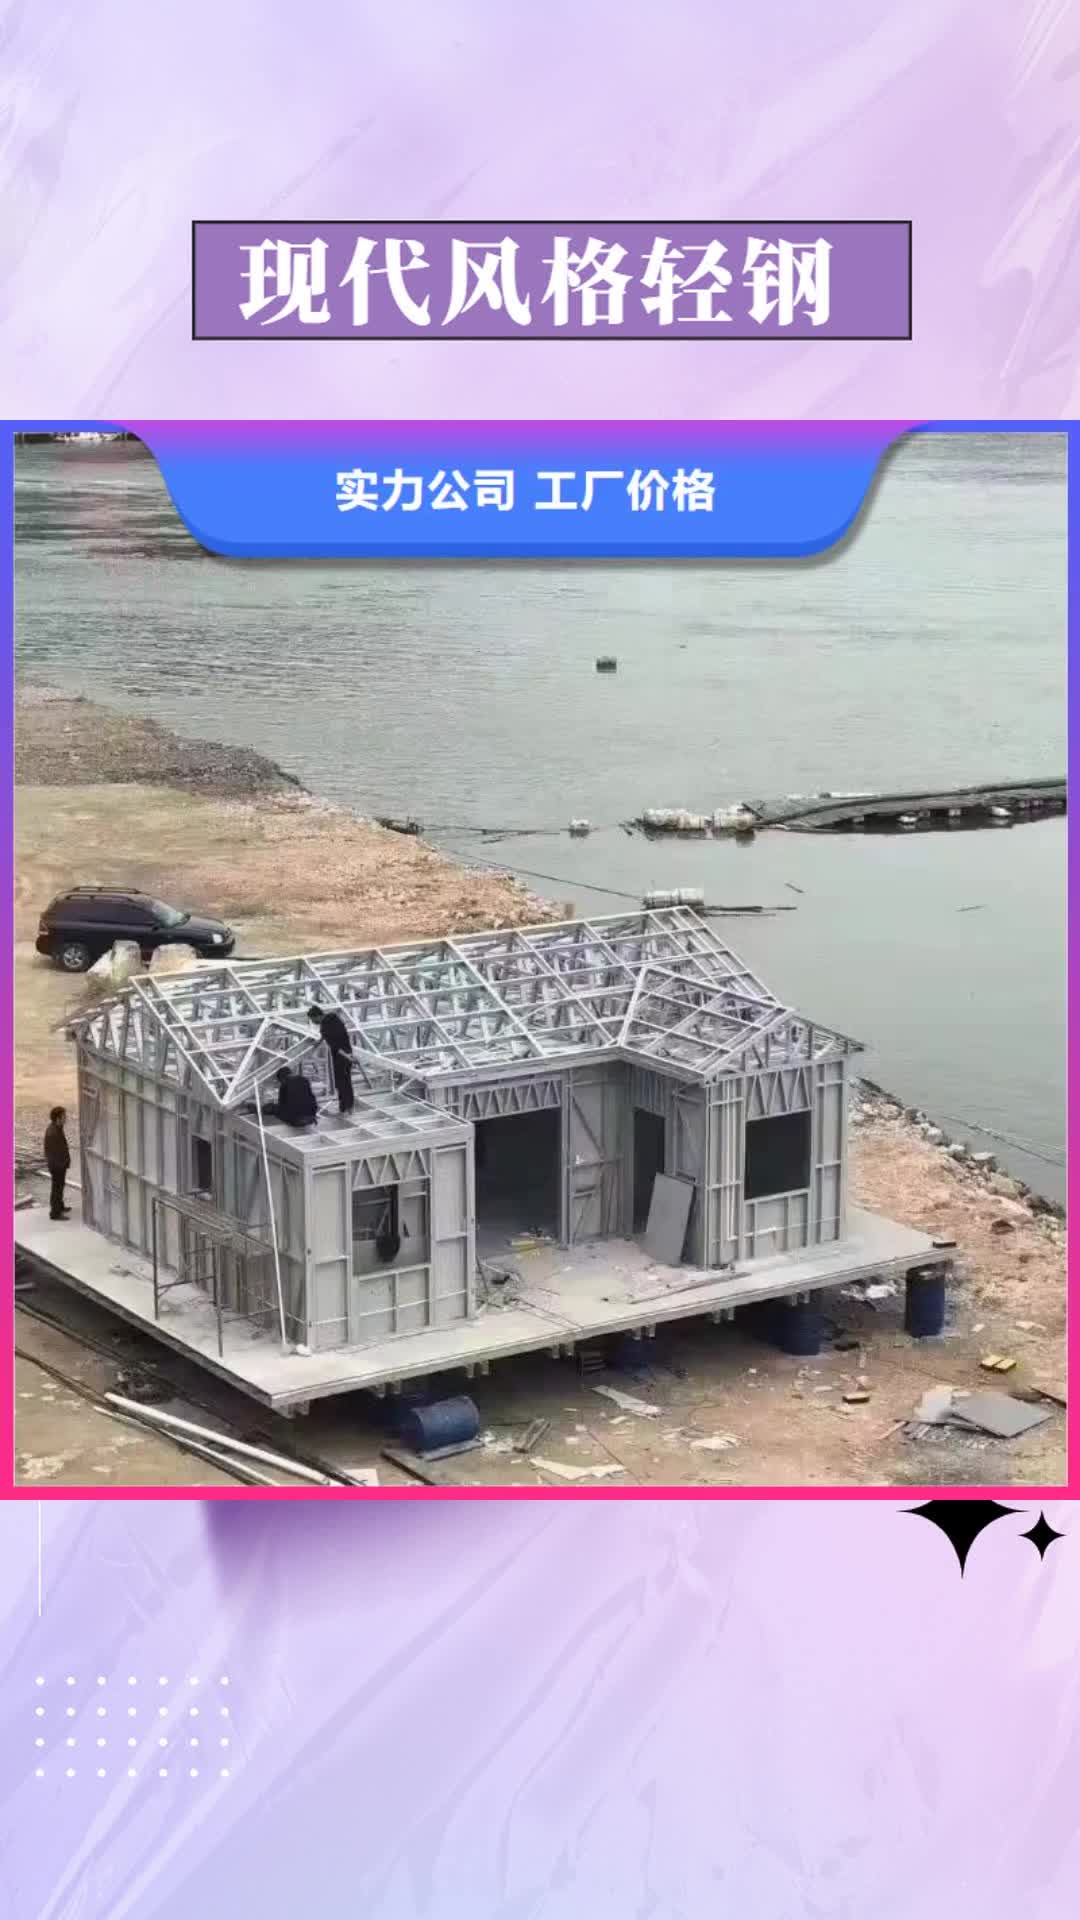 湛江【现代风格轻钢别墅】 轻钢房屋生产厂家